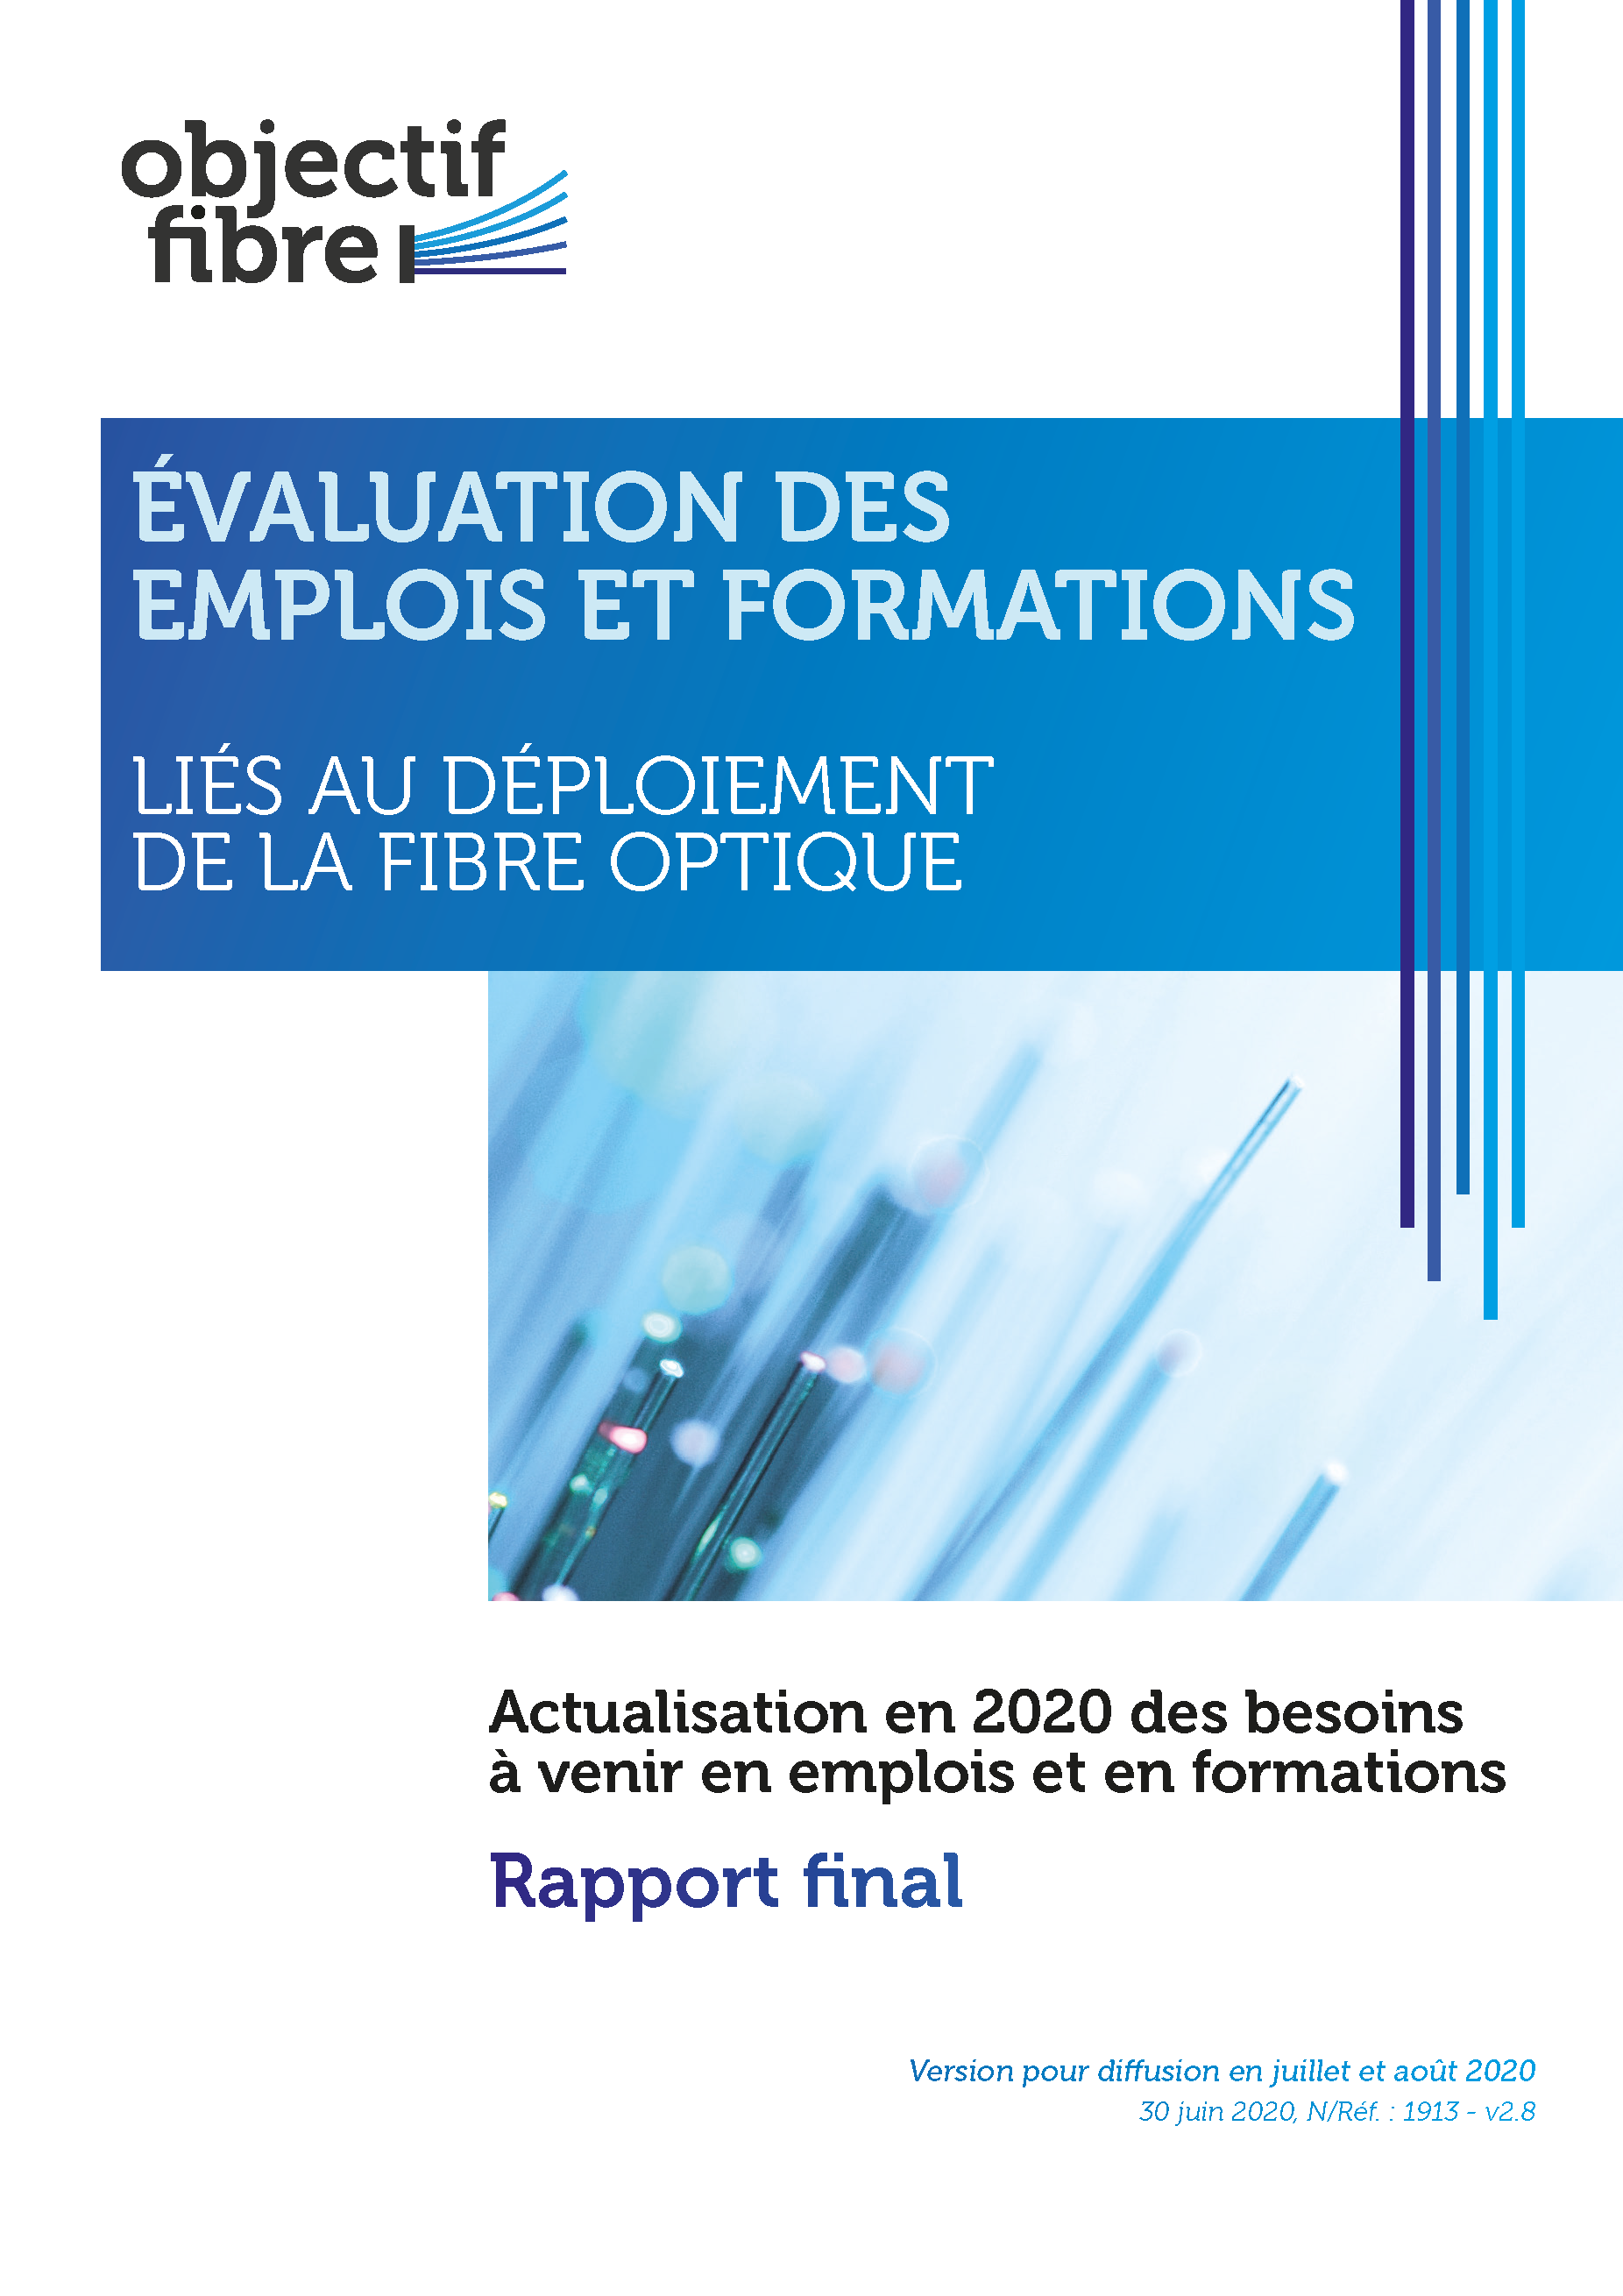 Les métiers de la Fibre Optique, une opportunité confirmée pour l'emploi dans le cadre du Plan France Très Haut Débit